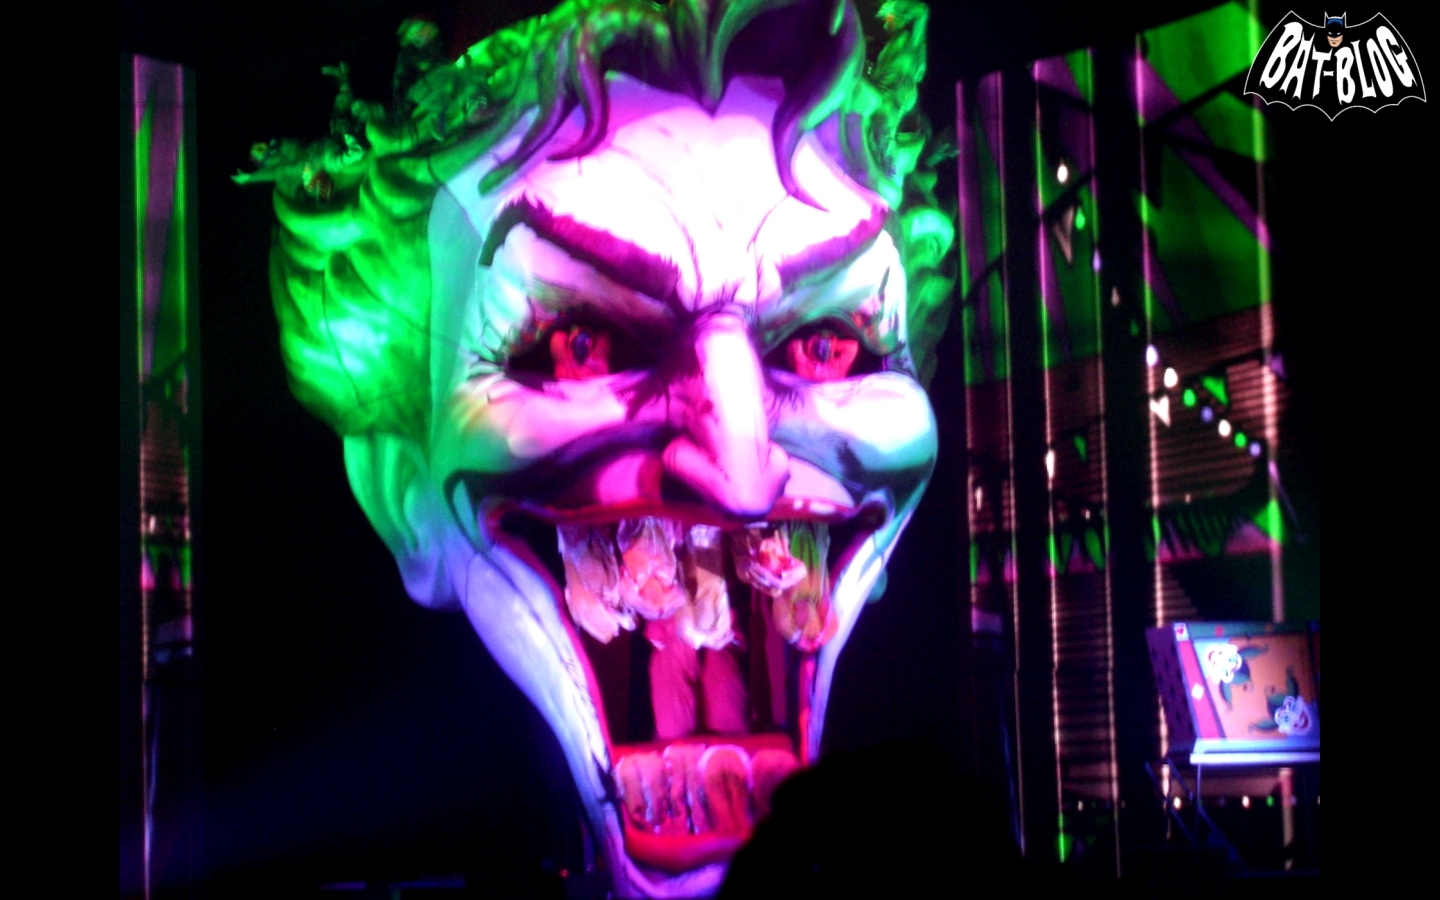 joker live wallpaper,light,supervillain,fictional character,performance,joker